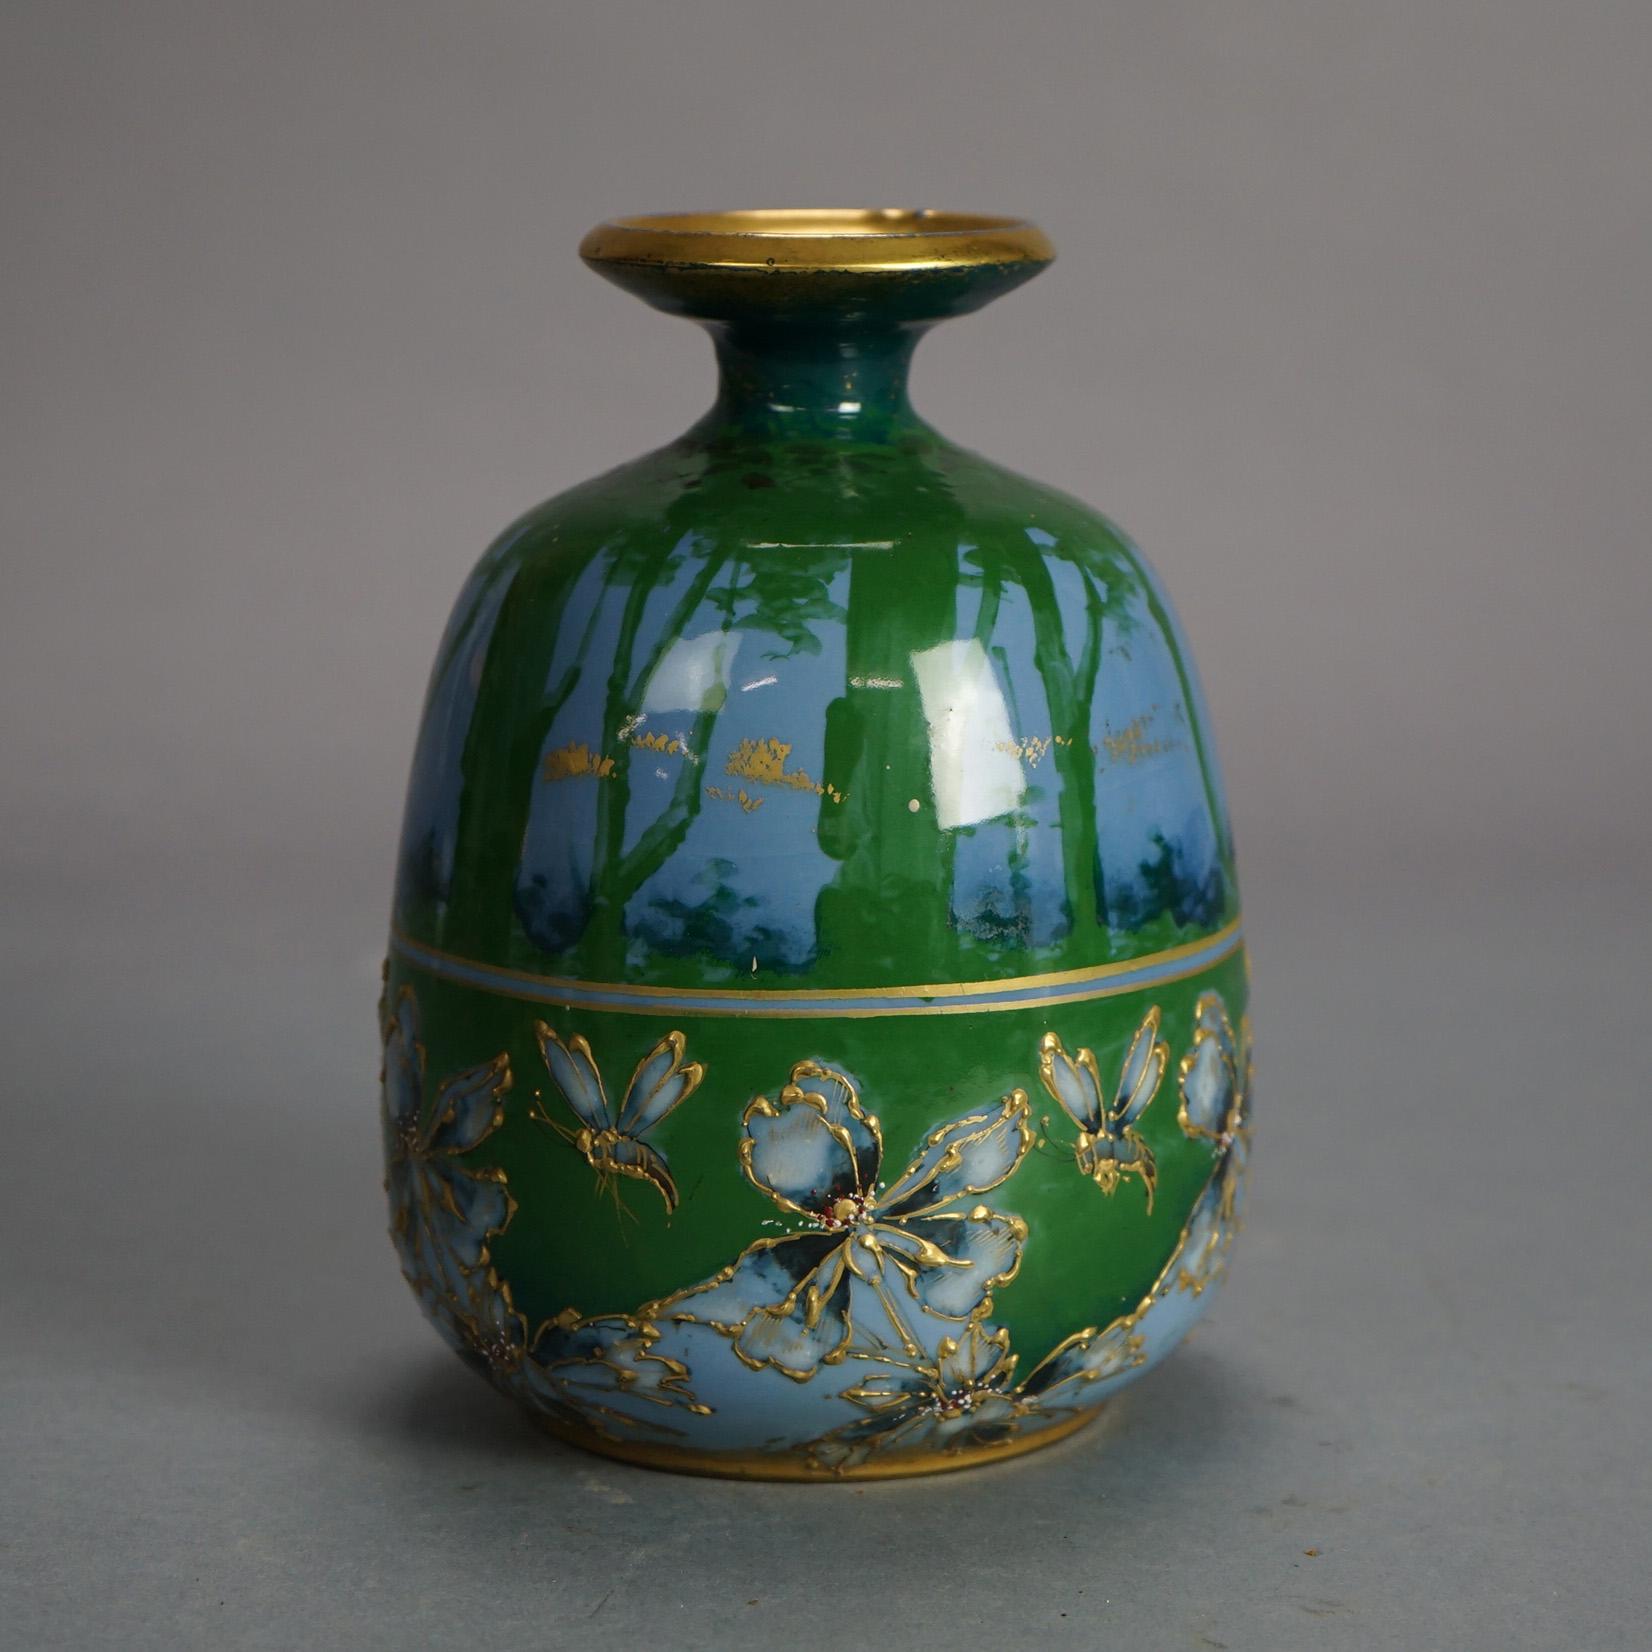 Vase ancien en poterie de Teplitz avec paysage boisé peint à la main à l'aube et rehauts dorés, vers 1910

Mesures - 7.25 